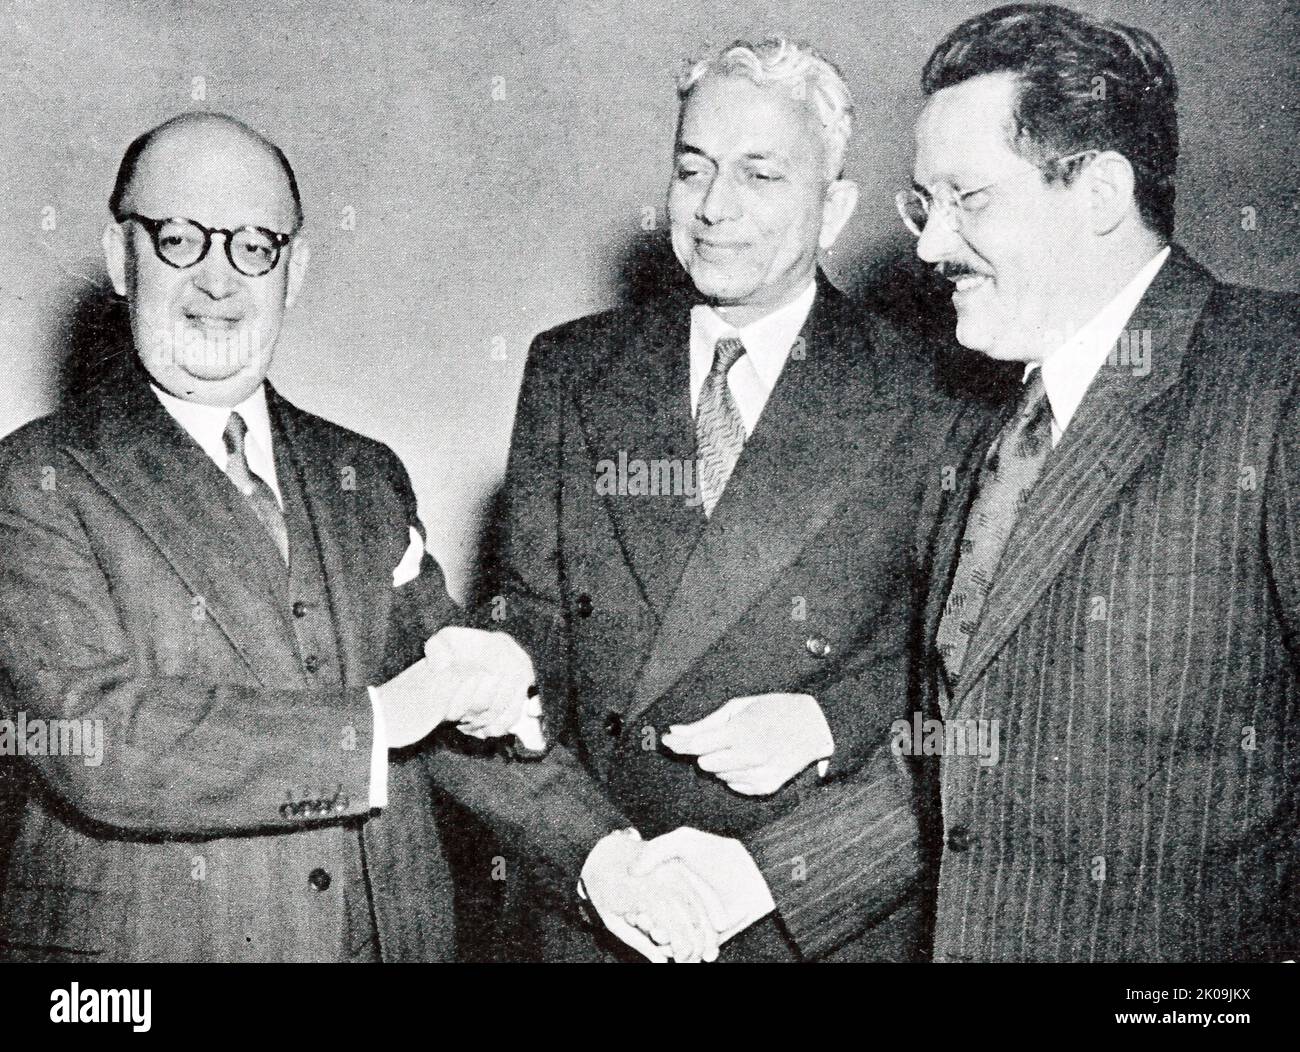 Neue Mitglieder des UN-Sicherheitsrates: Homero Viteri Lafonte (Equador), Sir Benegal Narsing Rau (Indien) und Edvard Kardelj (Jugoslawien). Sir Benegal Narsing Rau, CIE, (26. Februar 1887 - 30. November 1953) war ein indischer Beamter, Jurist, Diplomat und Staatsmann, bekannt für seine Schlüsselrolle bei der Ausarbeitung der Verfassung Indiens. Edvard Kardelj (27. Januar 1910 - 10. Februar 1979) war ein jugoslawischer Politiker und Ökonom. Stockfoto